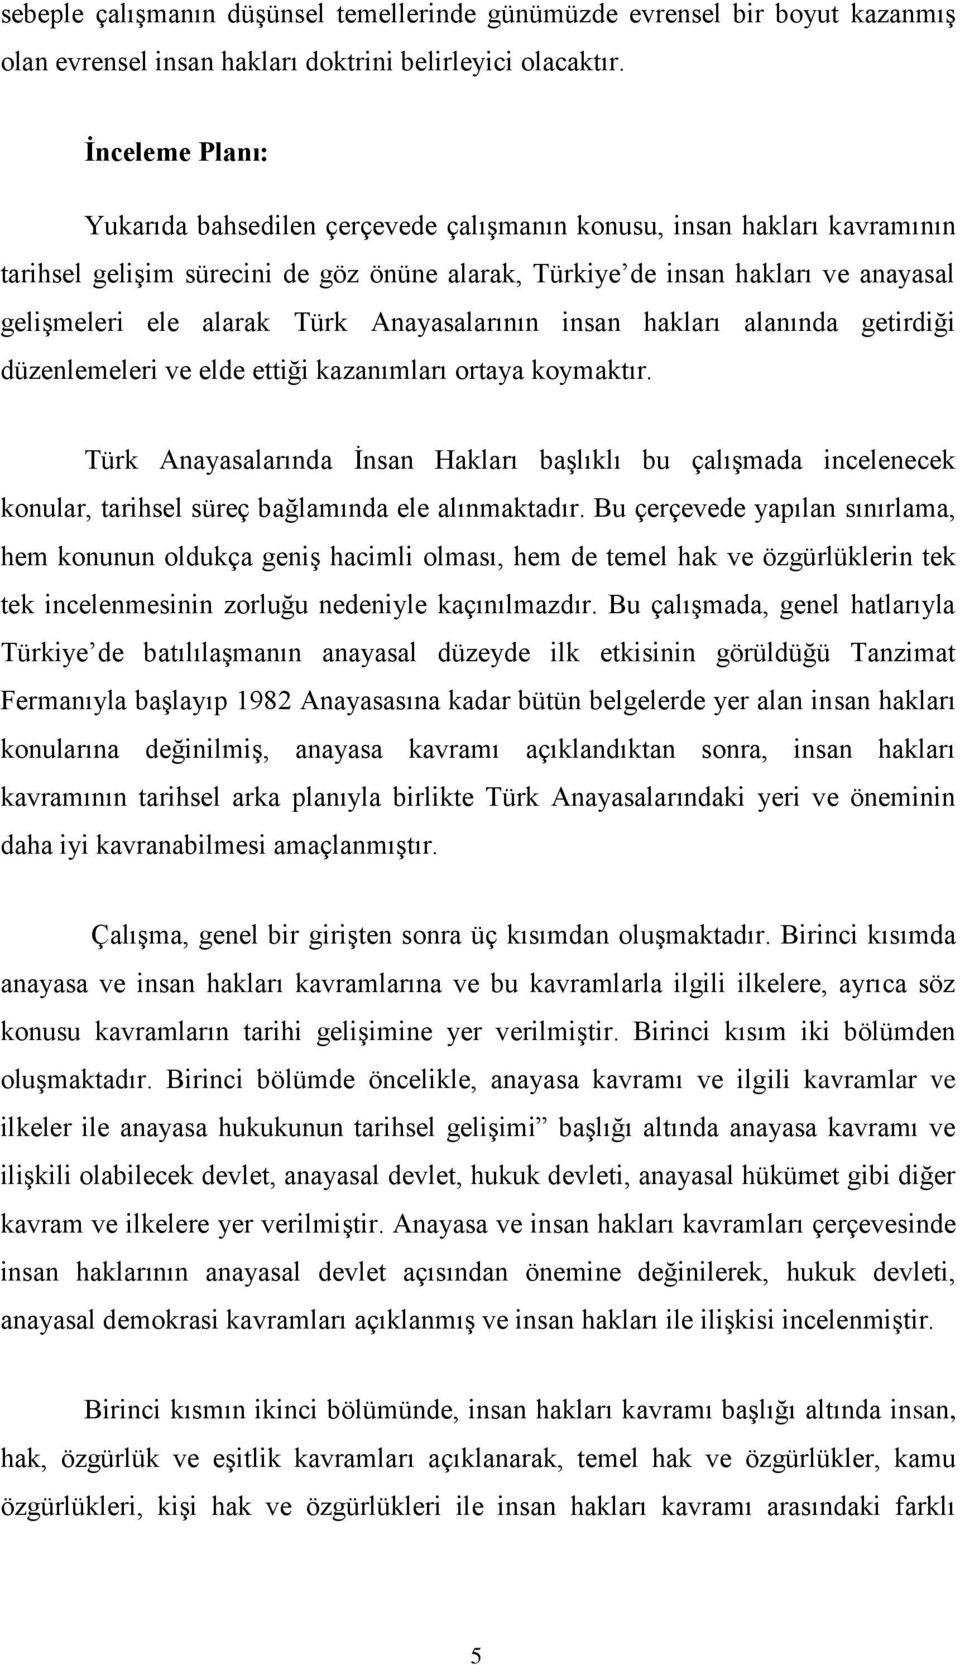 Türk Anayasalarının insan hakları alanında getirdiği düzenlemeleri ve elde ettiği kazanımları ortaya koymaktır.